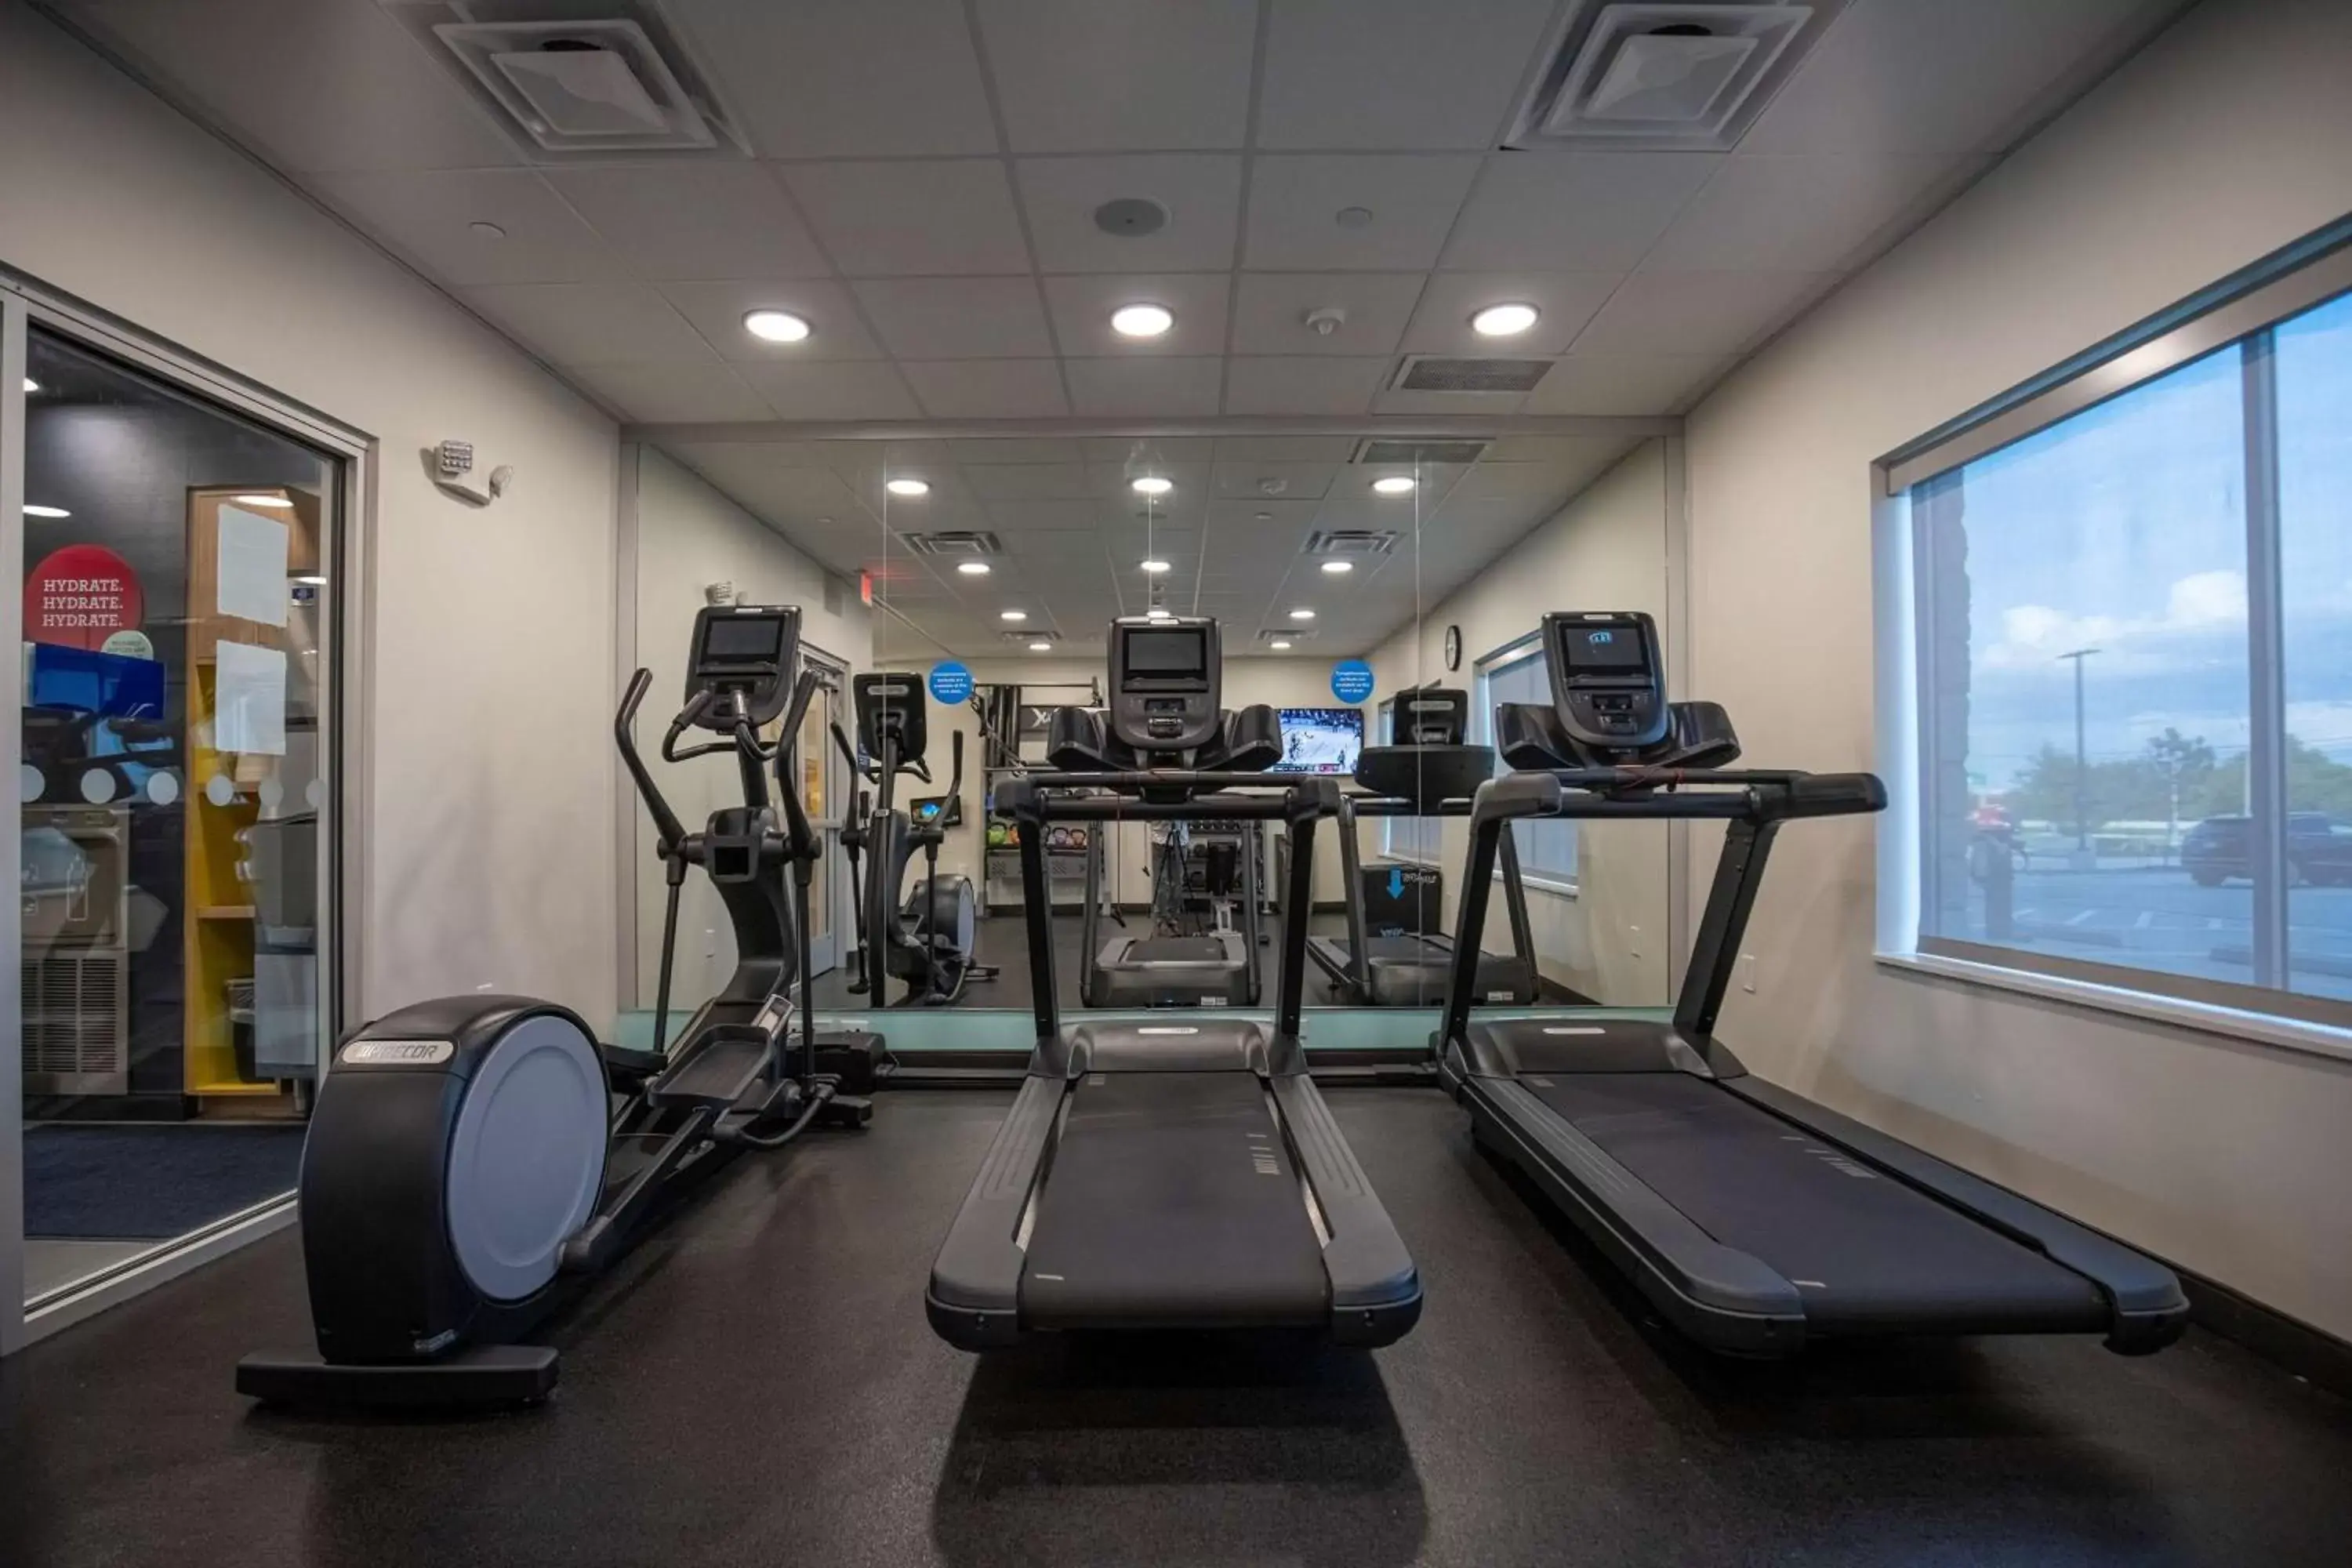 Fitness centre/facilities, Fitness Center/Facilities in Tru By Hilton Allen Dallas, Tx